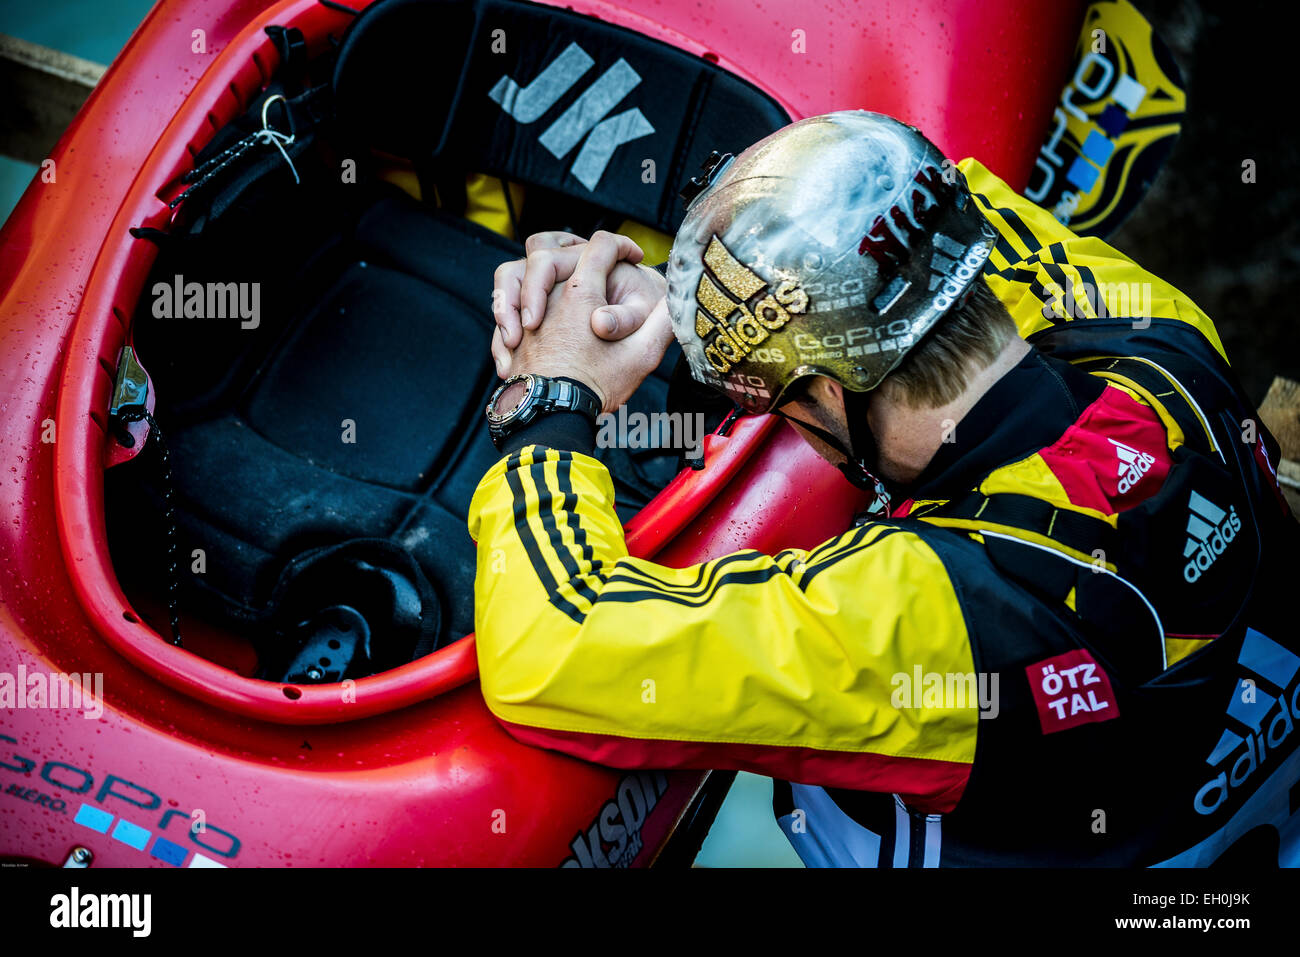 La kayakiste Nicholas Troutman (CAN) priant avant de participer à l'Adidas SICKLINE EXTREME KAYAK WORLD CHAMPIONSHIP en 2014 Banque D'Images